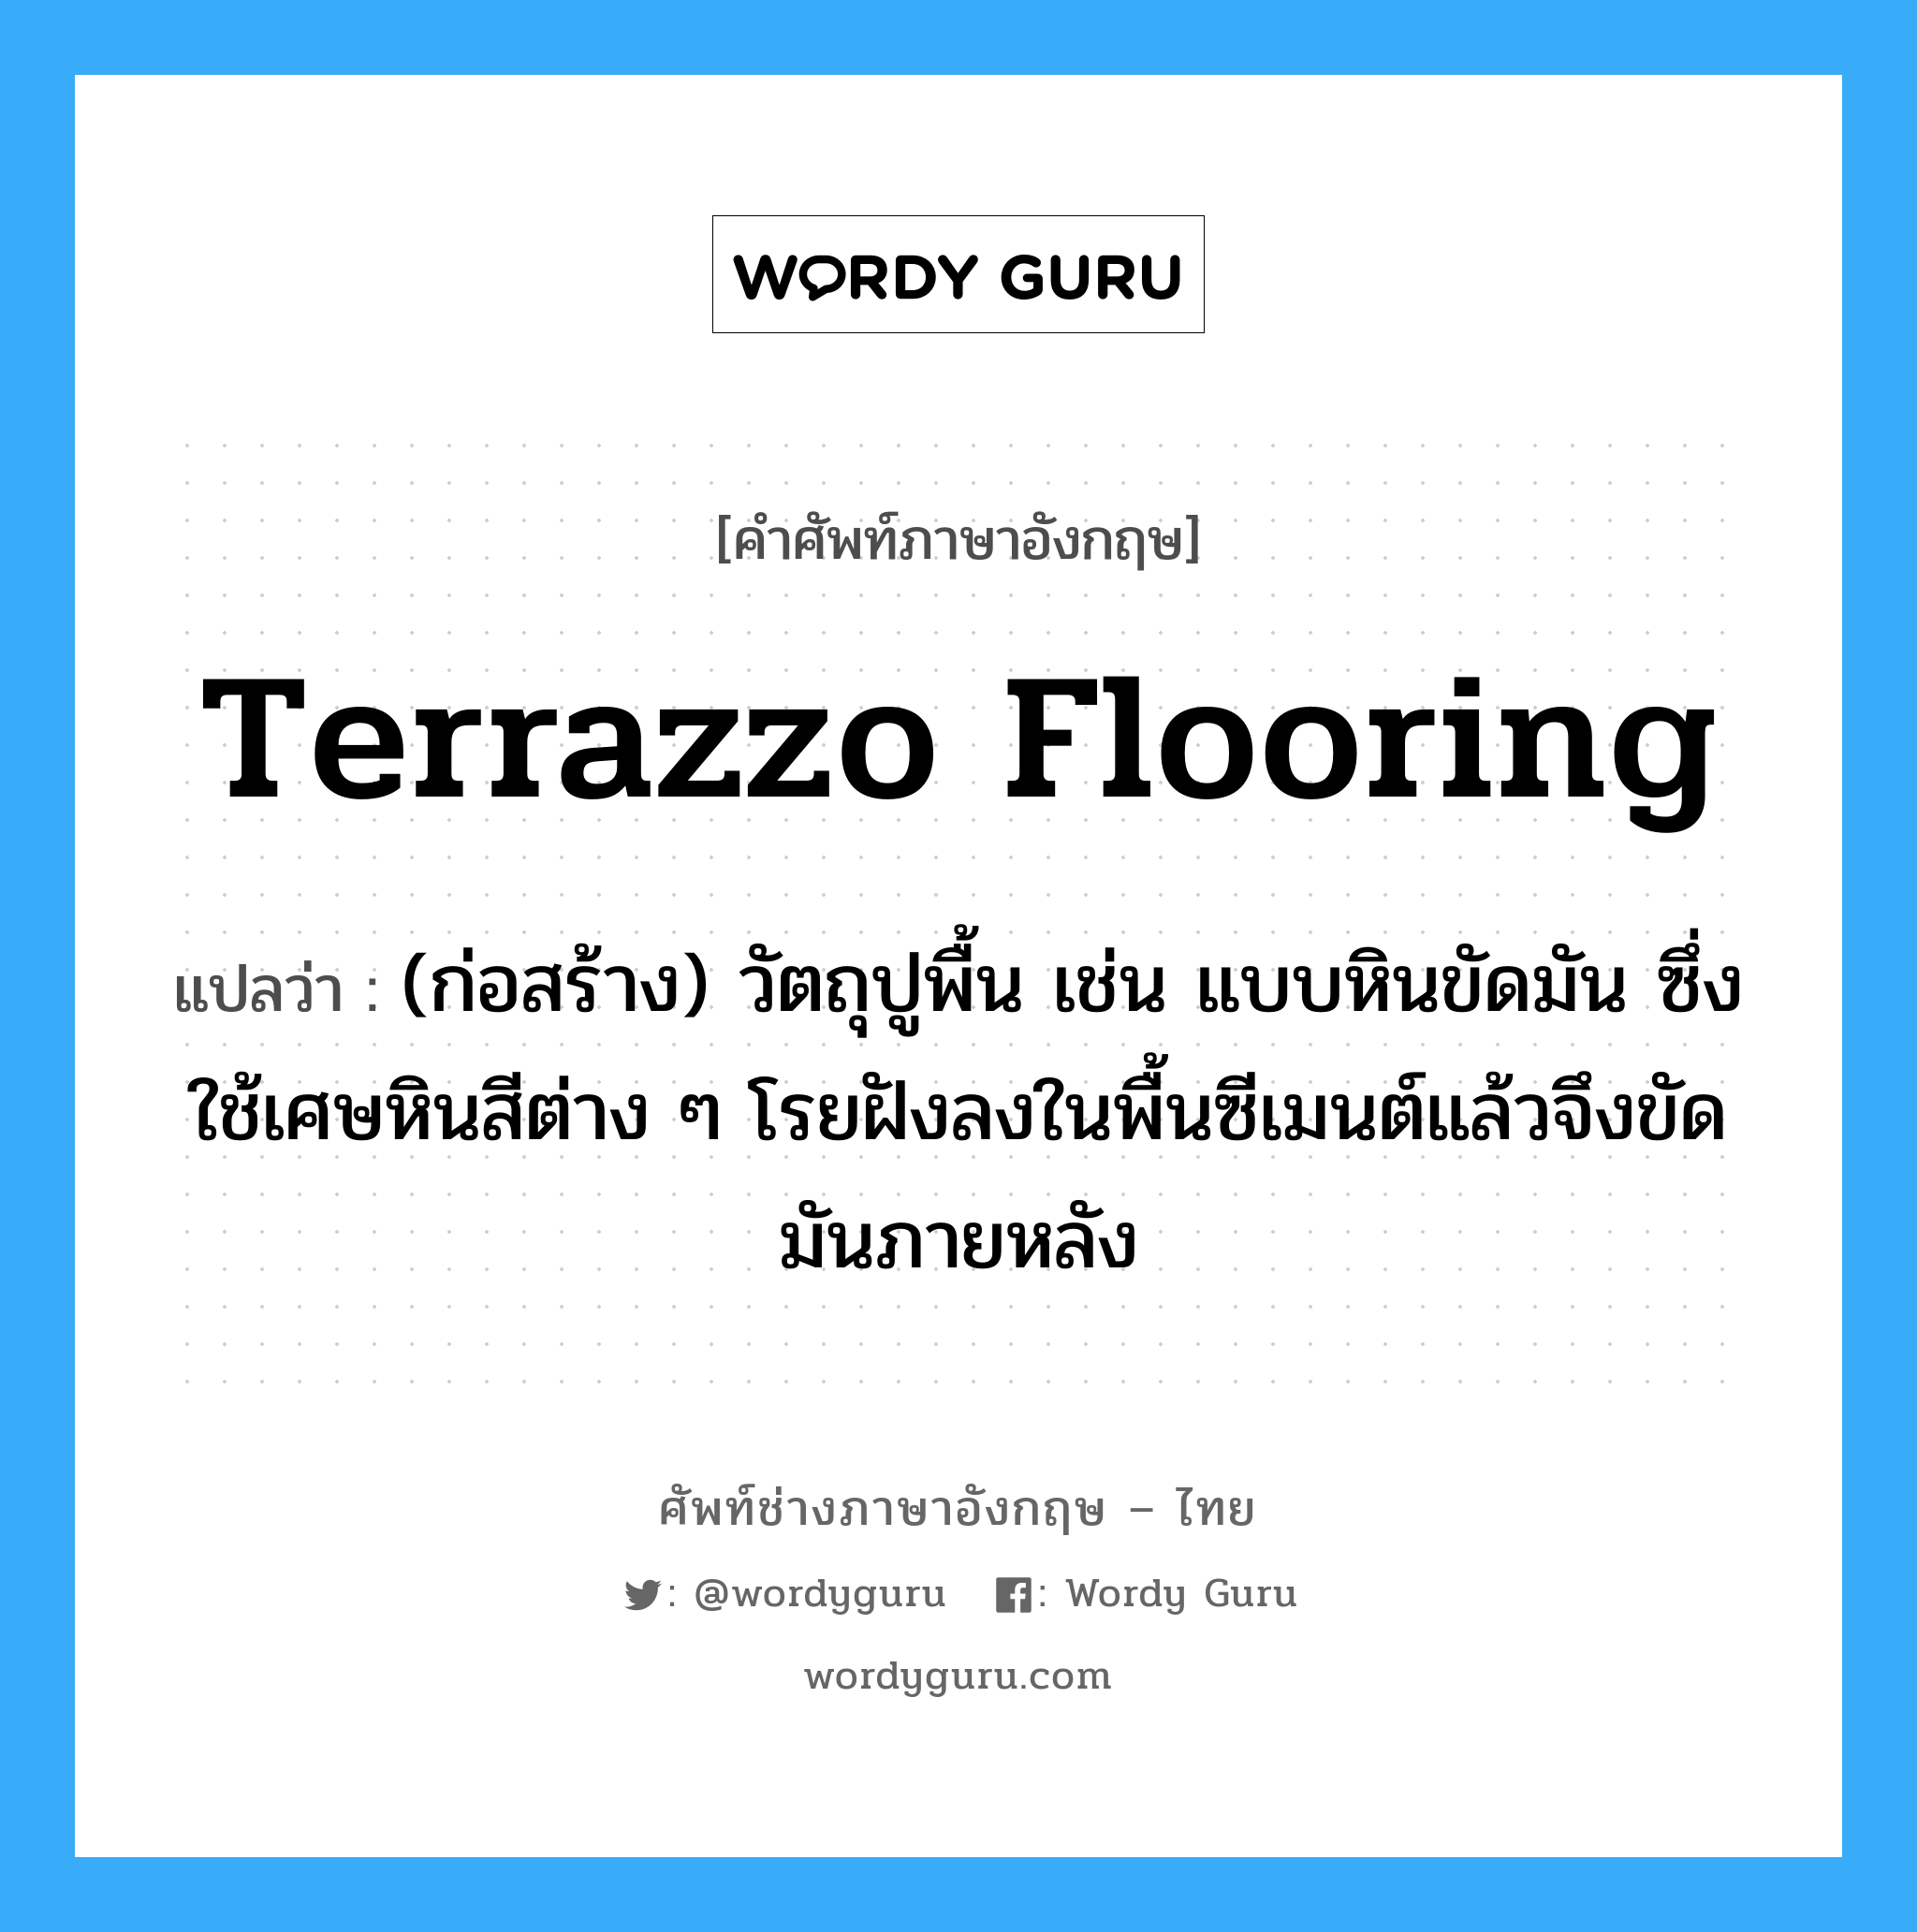 terrazzo flooring แปลว่า?, คำศัพท์ช่างภาษาอังกฤษ - ไทย terrazzo flooring คำศัพท์ภาษาอังกฤษ terrazzo flooring แปลว่า (ก่อสร้าง) วัตถุปูพื้น เช่น แบบหินขัดมัน ซึ่งใช้เศษหินสีต่าง ๆ โรยฝังลงในพื้นซีเมนต์แล้วจึงขัดมันภายหลัง